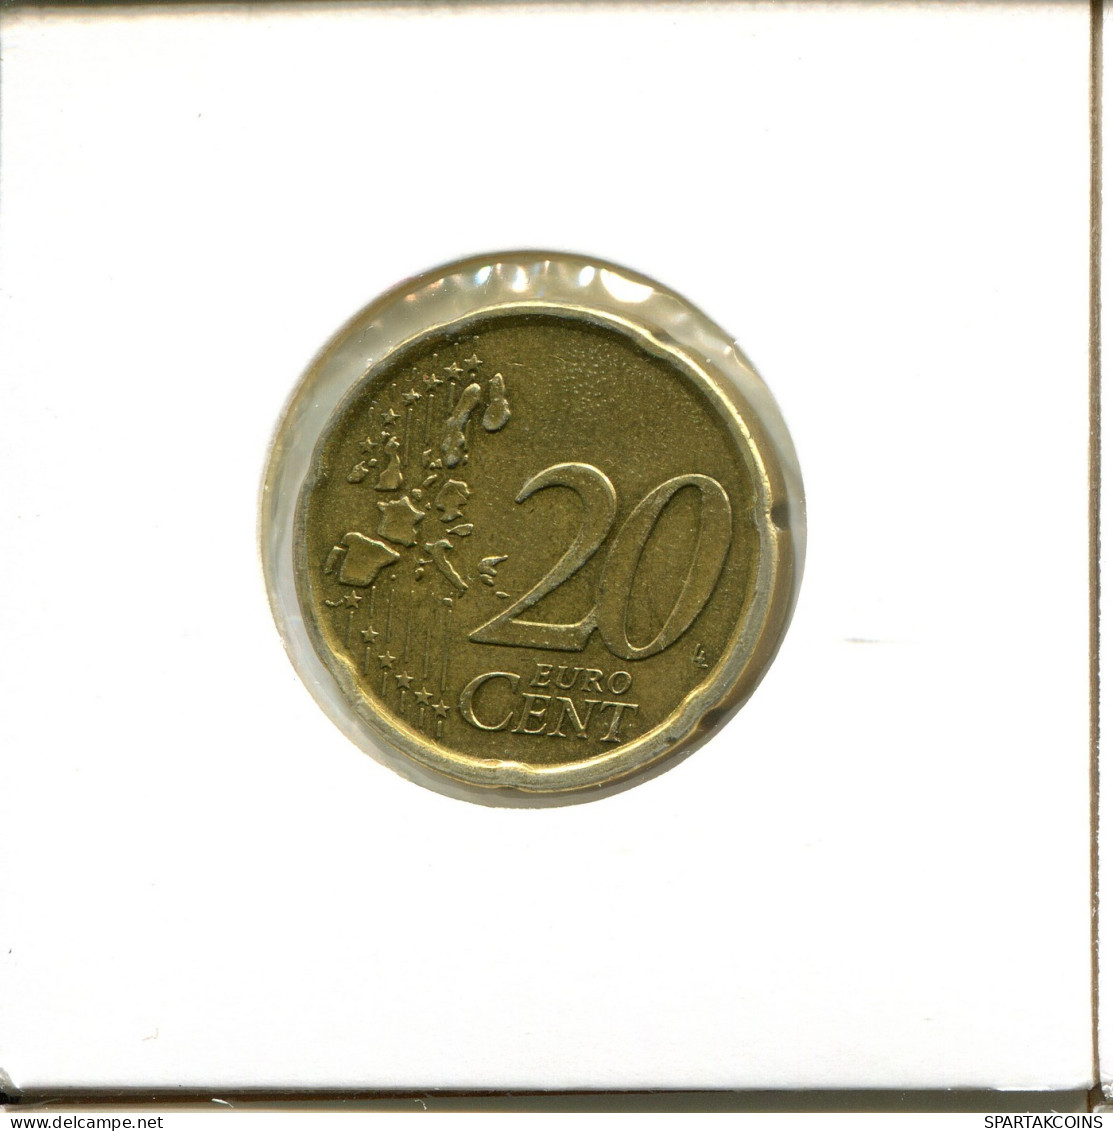 20 EURO CENTS 2002 SPANIEN SPAIN Münze #EU362.D.A - Espagne